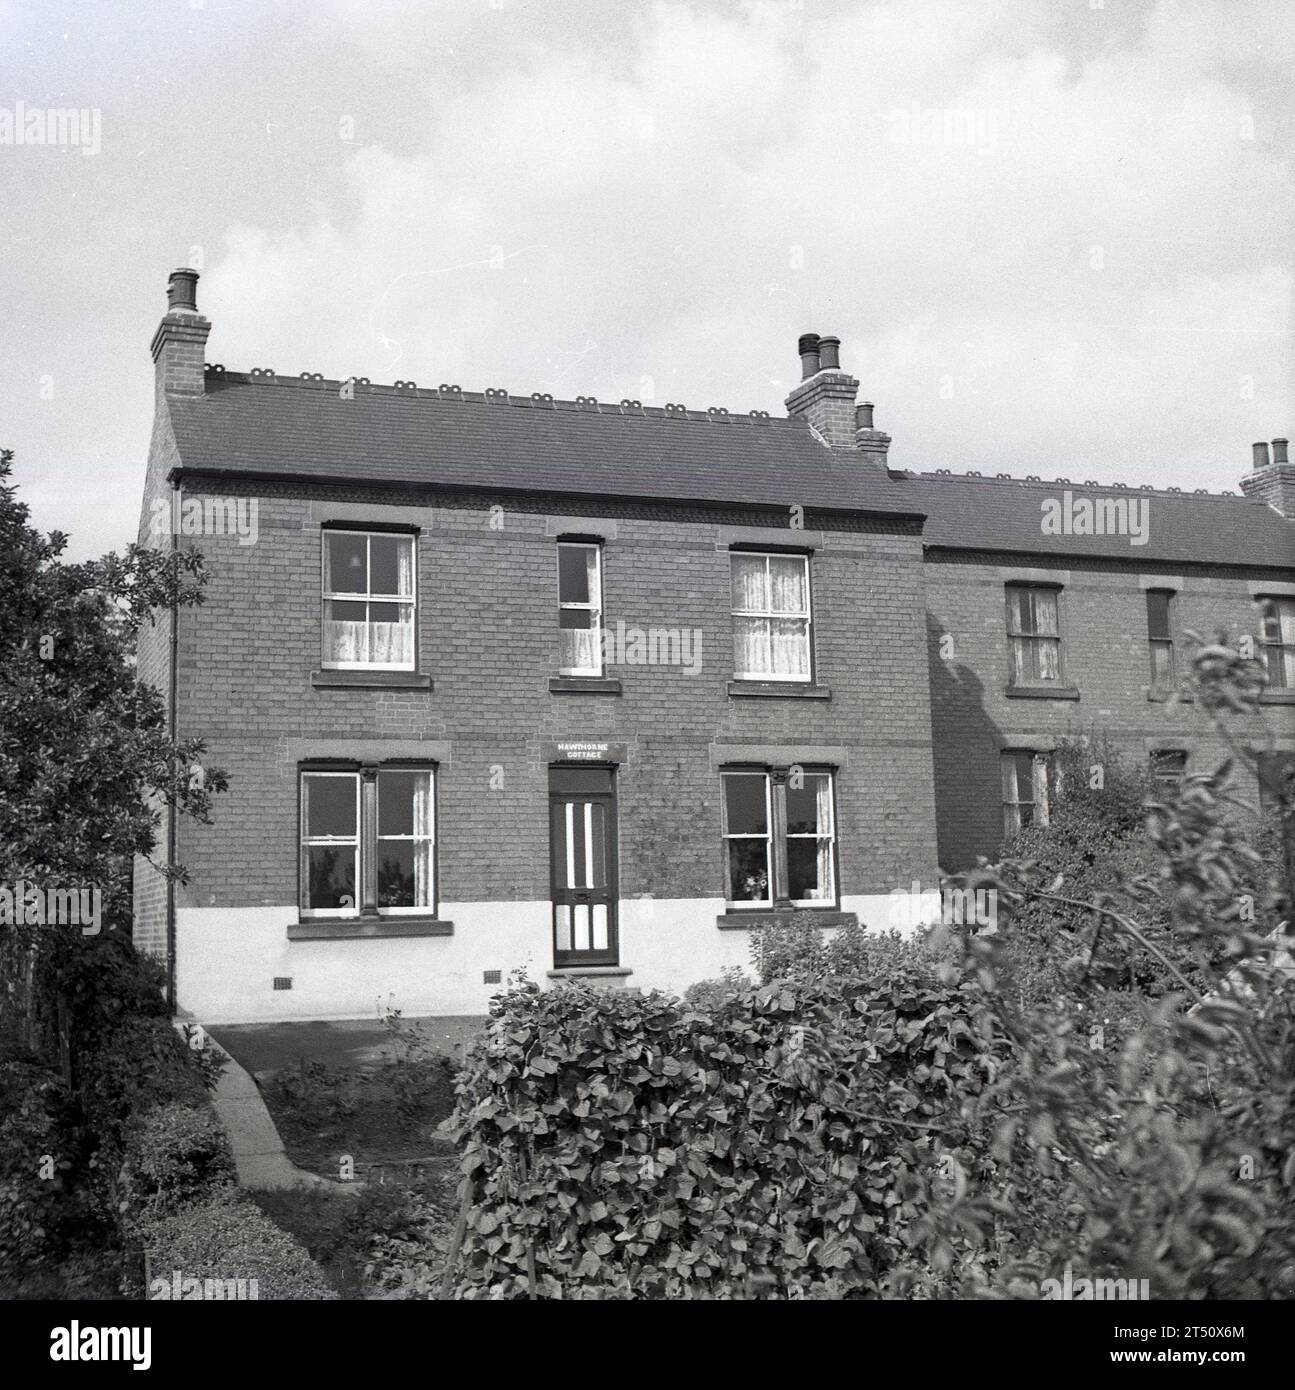 1950, storica, vista di una casa indipendente in mattoni vittoriani con facciata piatta, su un crinale, serra in giardino, Oldham, Inghilterra, REGNO UNITO. Nome sulla porta, Hawthorne Cottage. Foto Stock